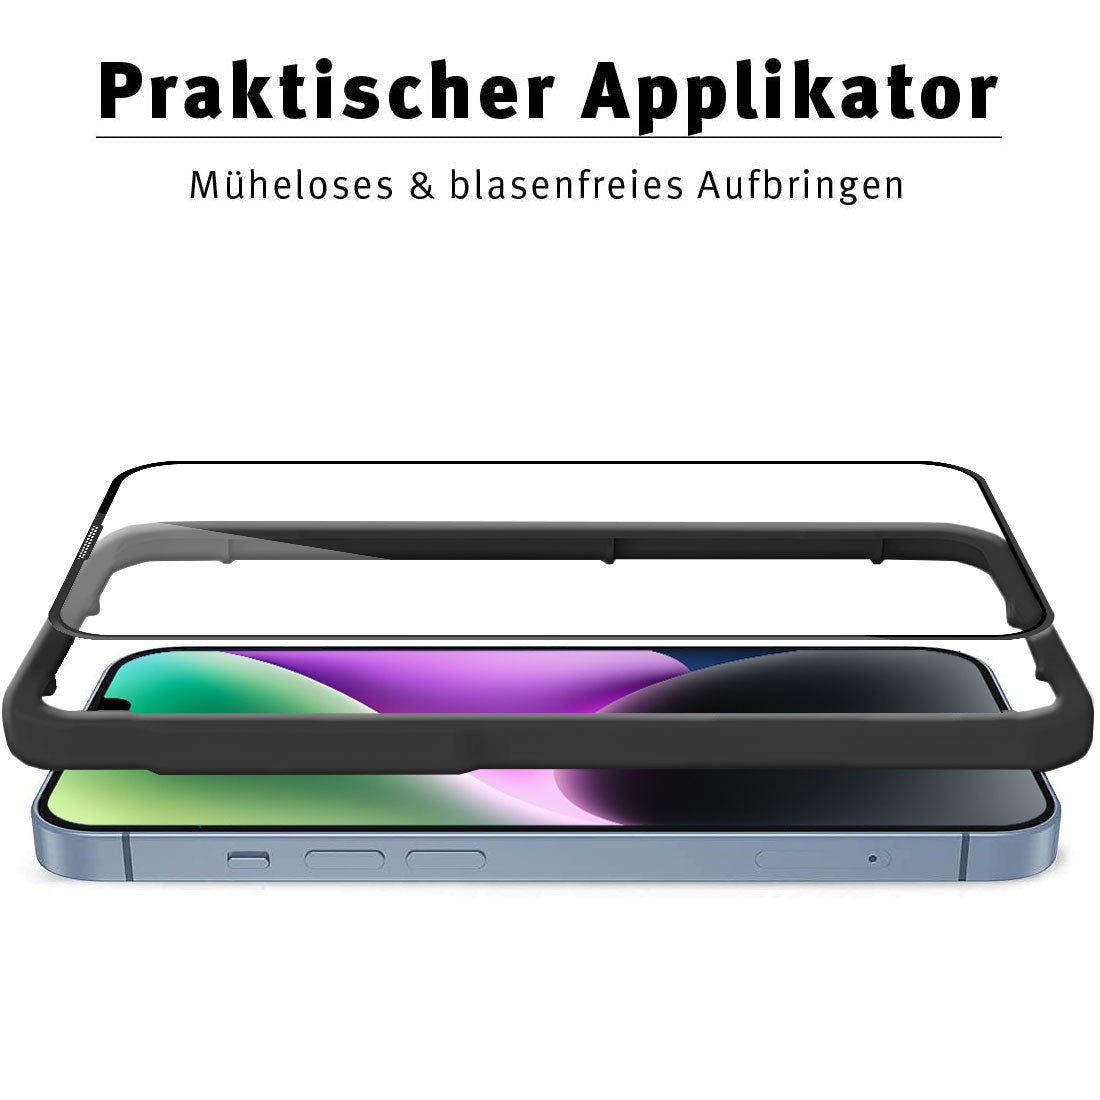 ArktisPRO iPhone 14 Plus FULL COVER Displayschutz GLAS - hüllenfreundlich - 3er Set